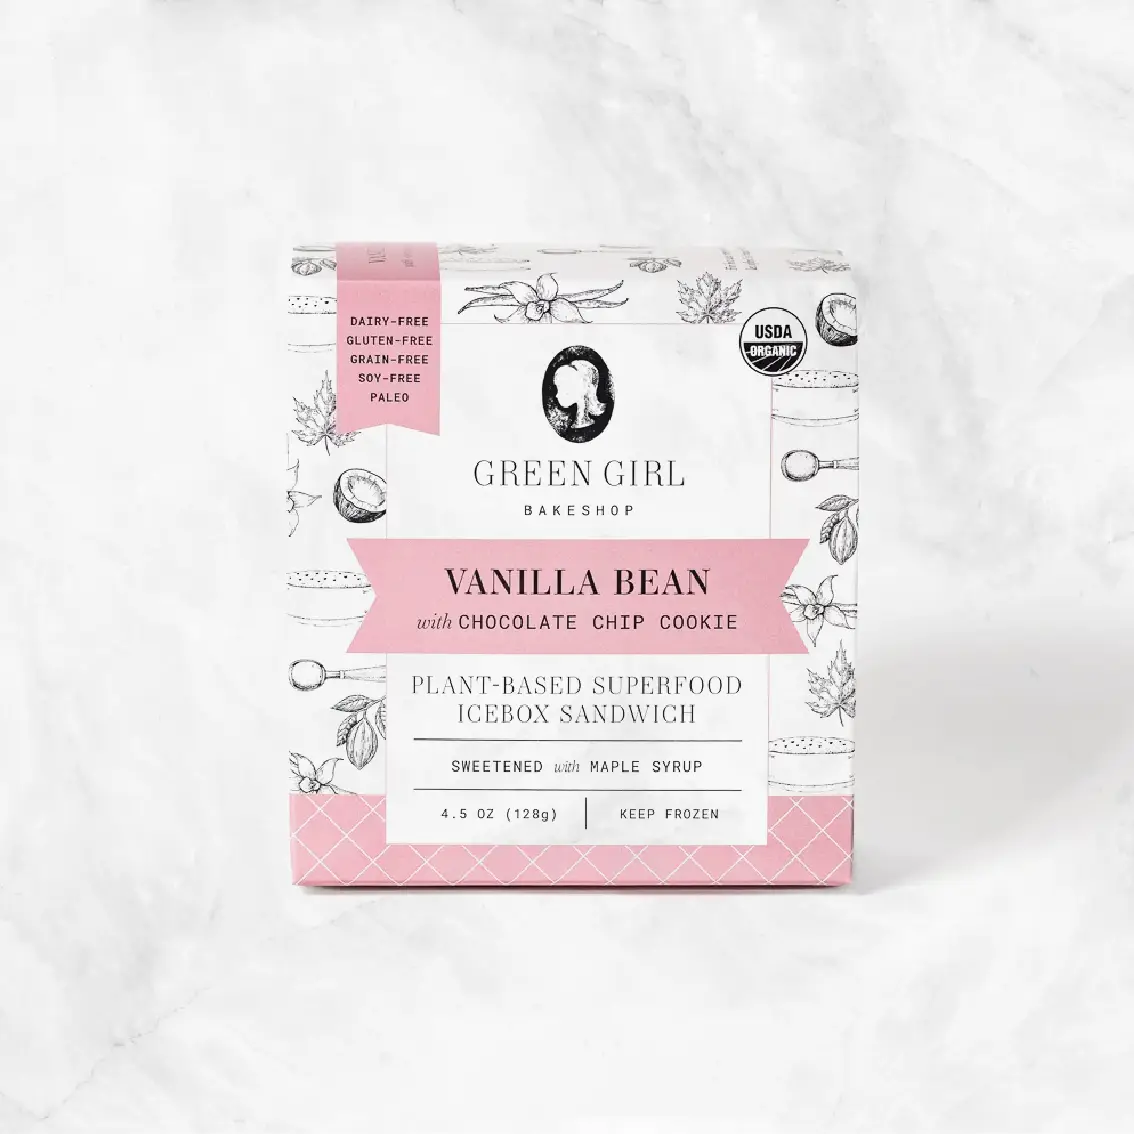 Vanilla Bean Ice Cream Sandwich Delivery